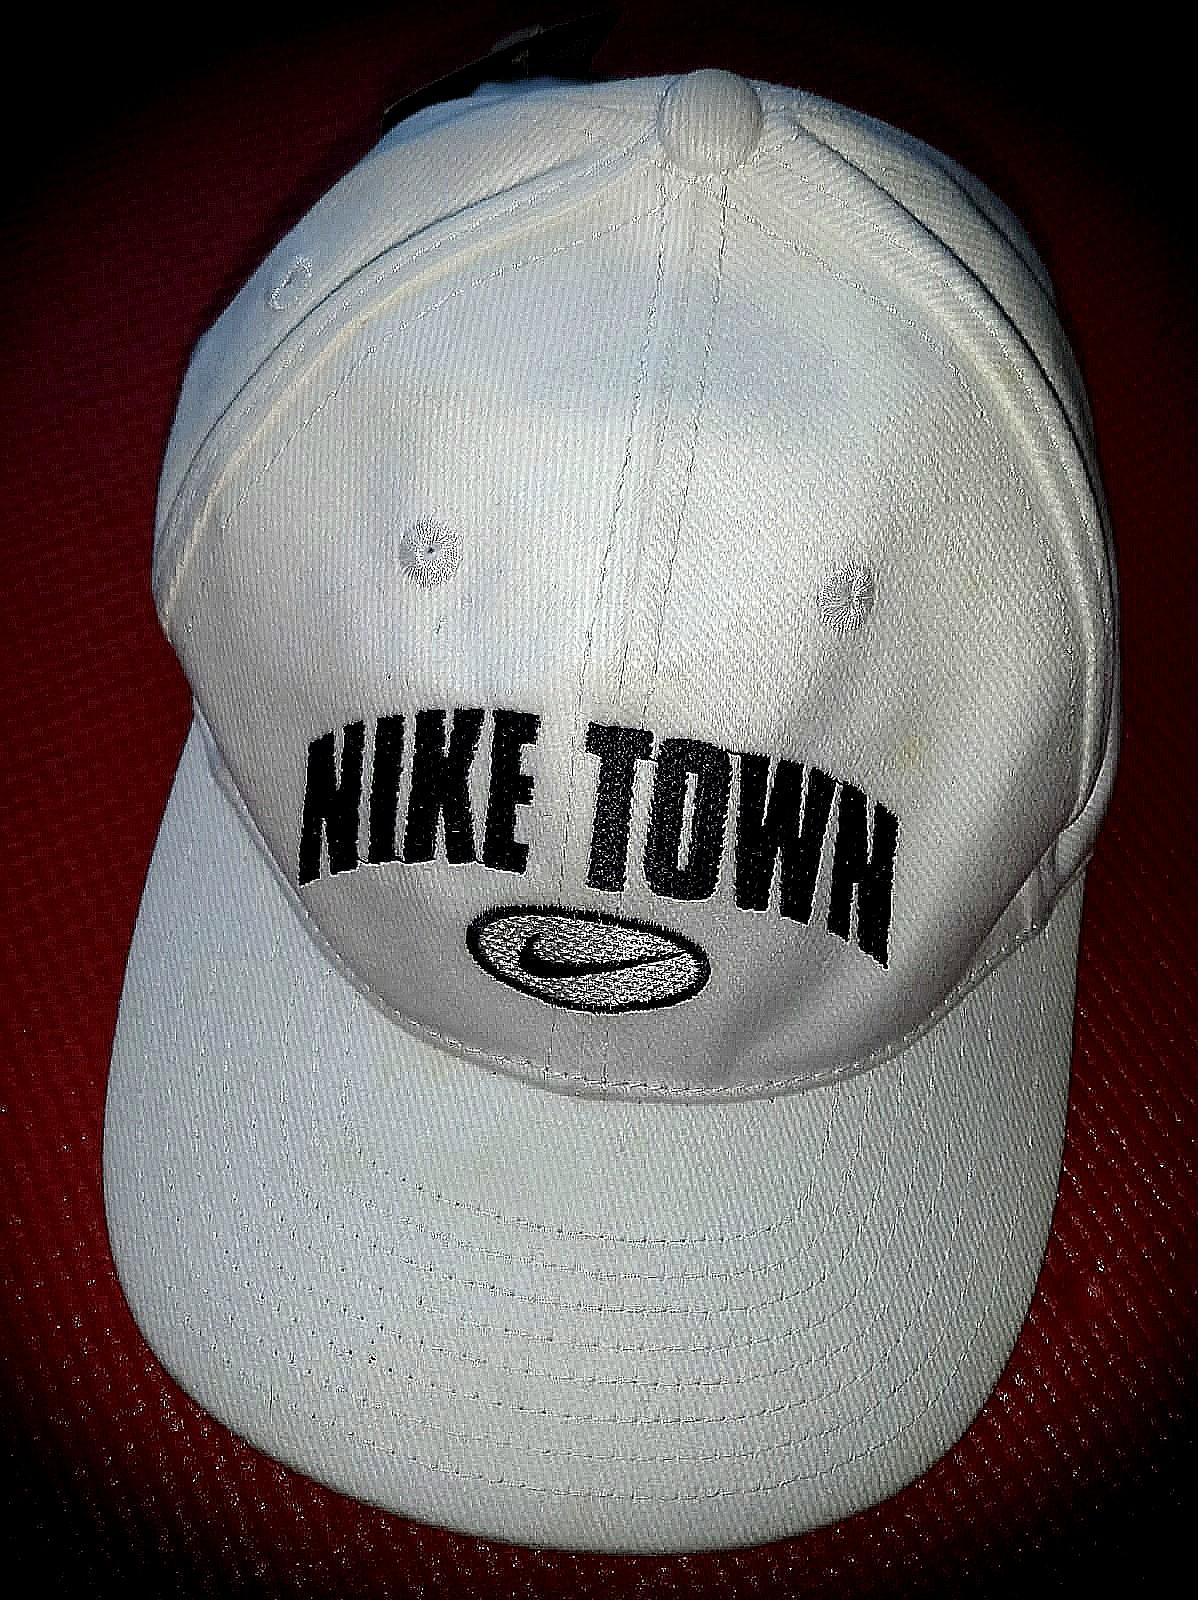 nike town cap